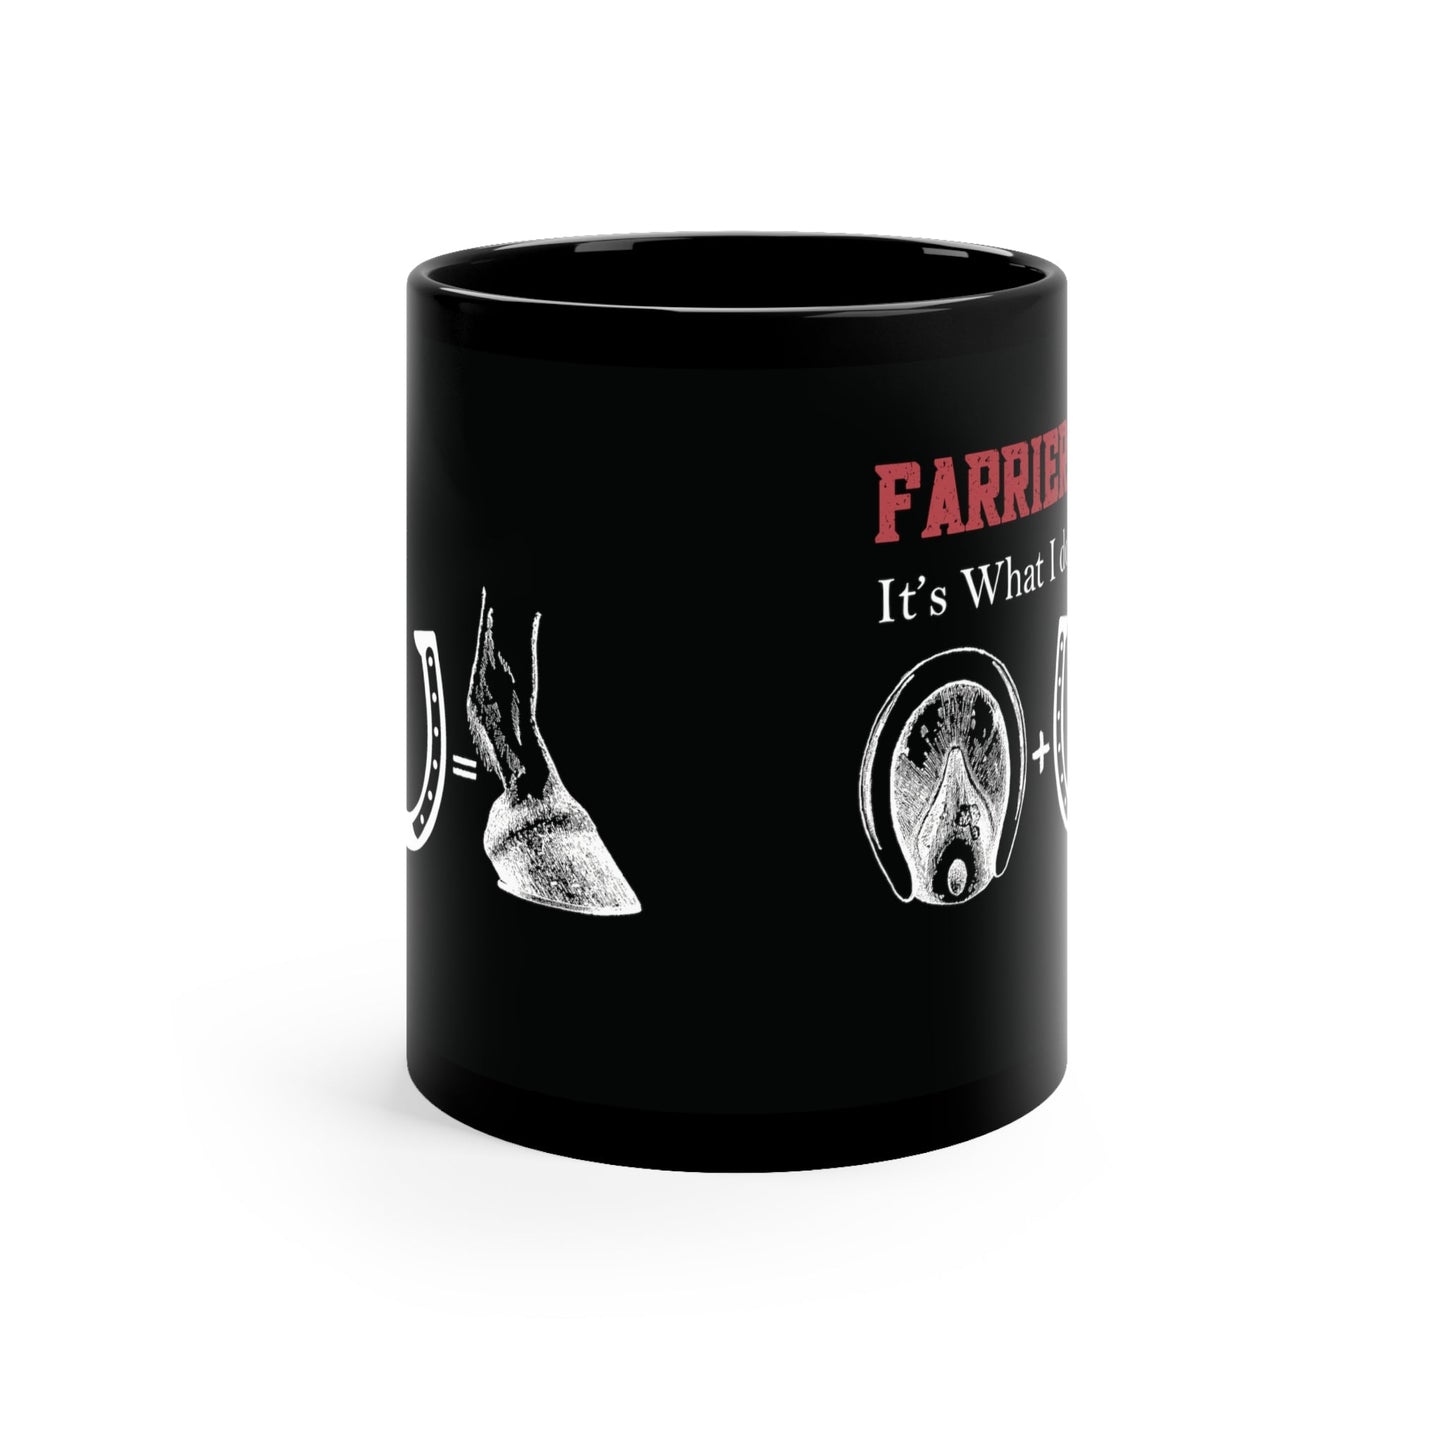 Farrier Ceramic Black Mug, Farrier: "Its What I Do", Horseshoer Cup, Professional Farrier - FlooredByArt